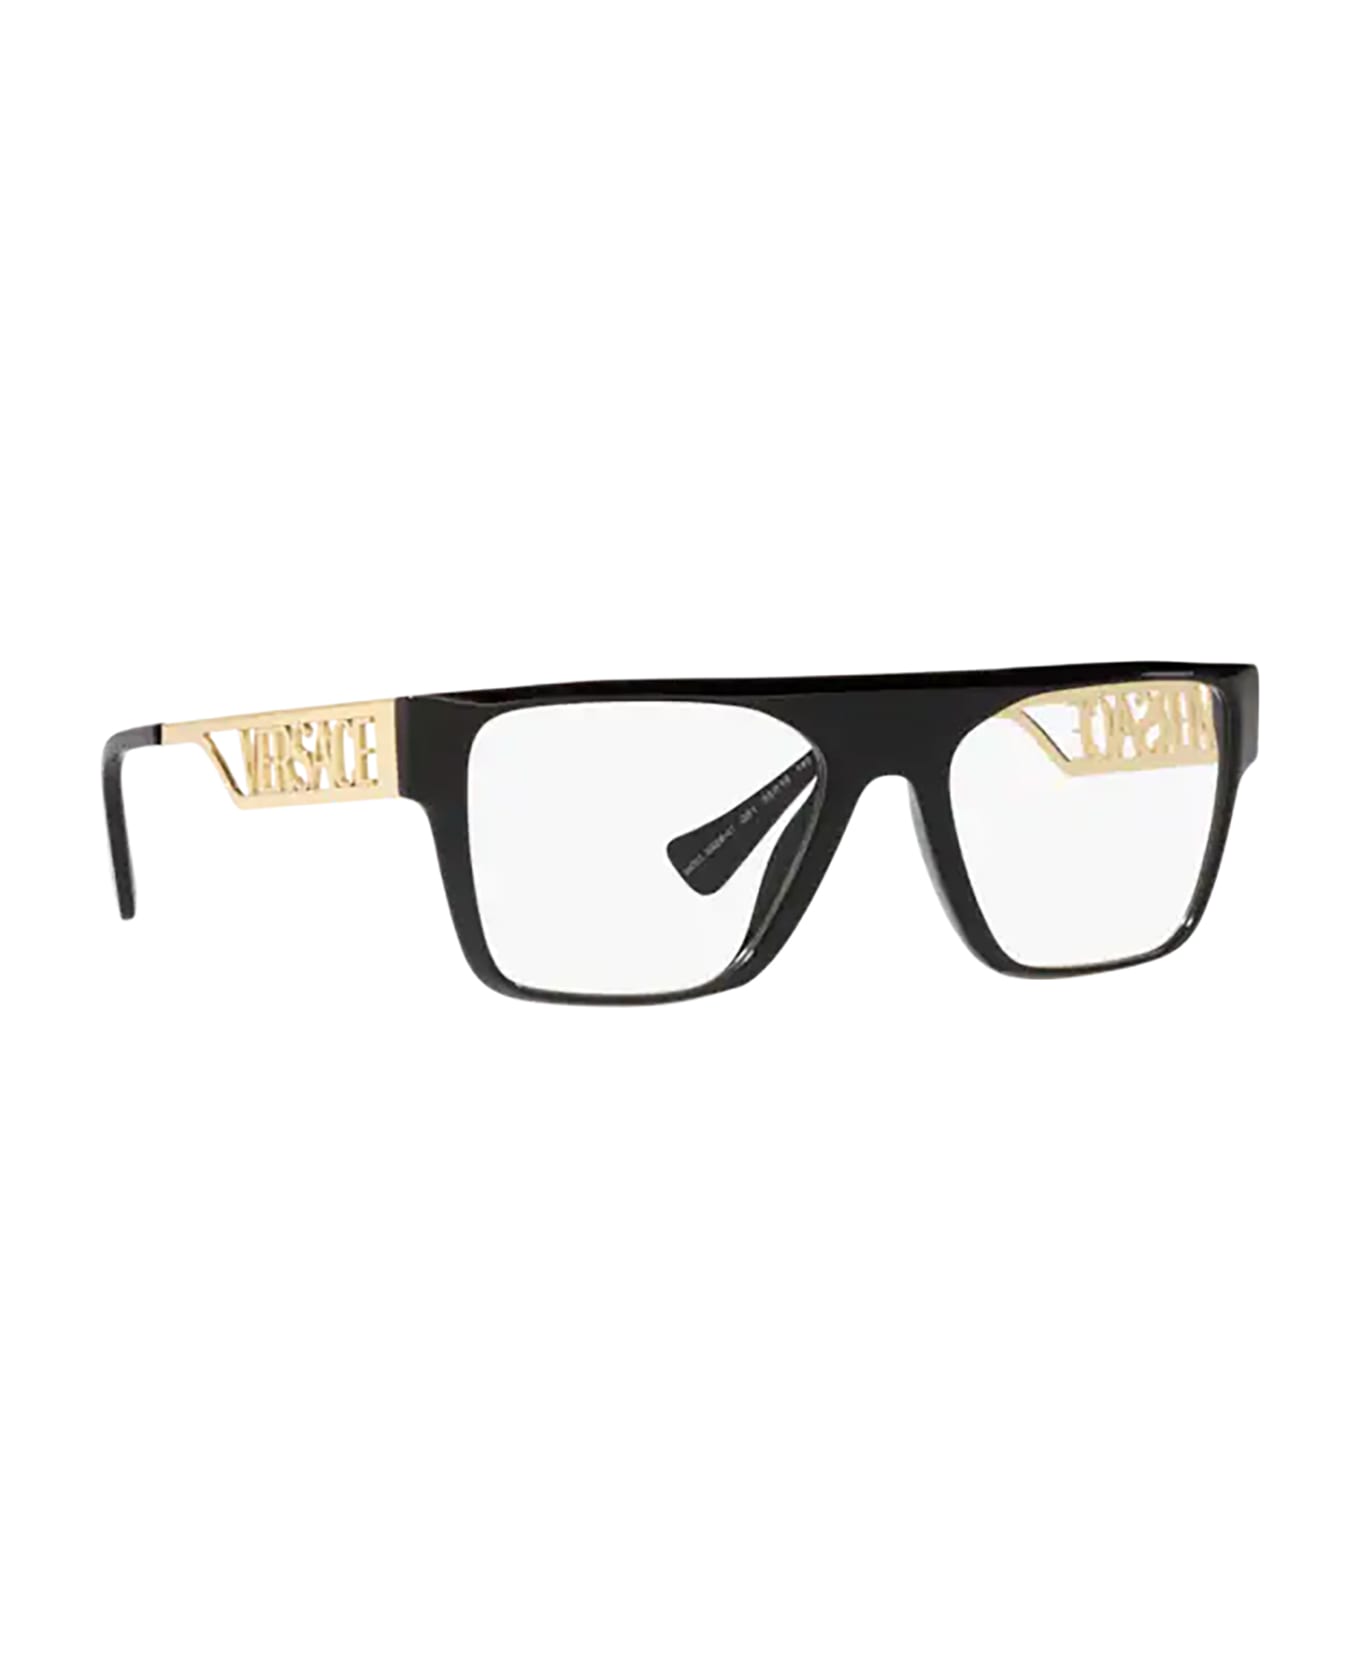 Versace Eyewear Ve3326u Black Glasses - Black